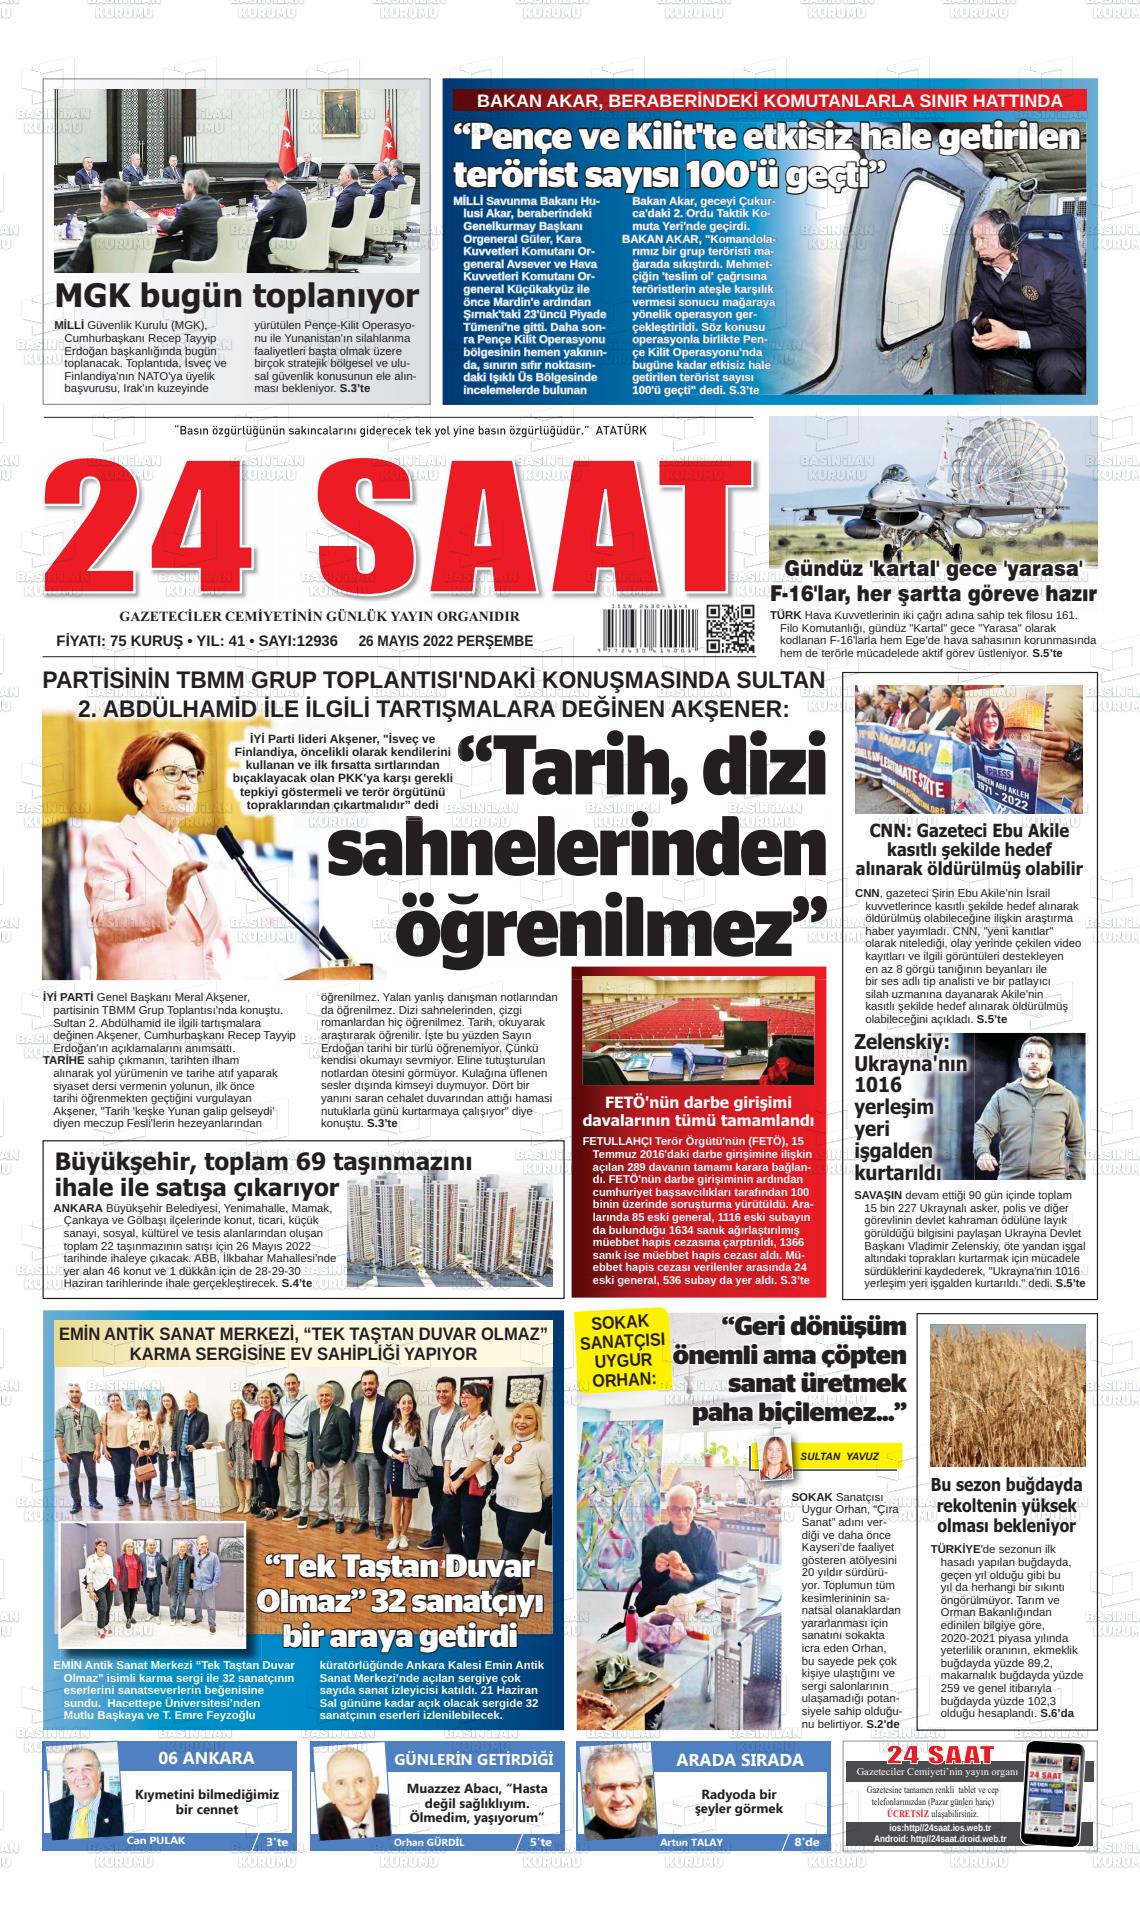 26 Mayıs 2022 24 Saat Gazete Manşeti